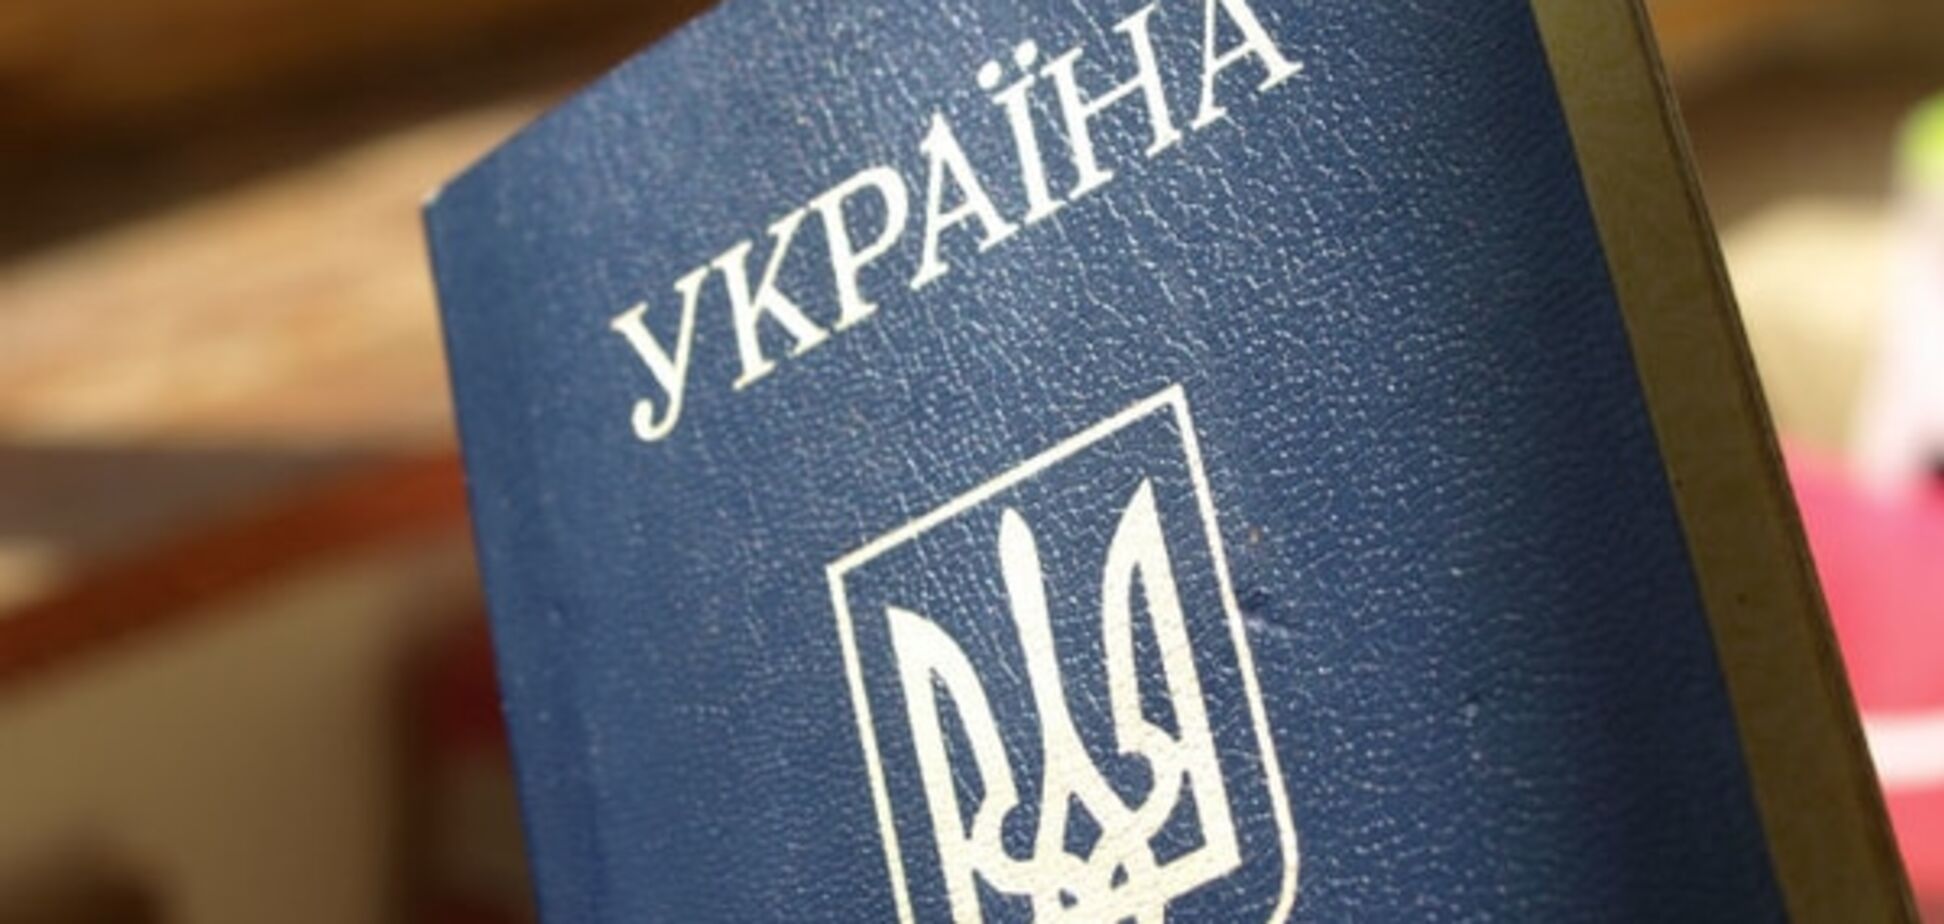 Інформація про примусовий обмін українських паспортів на паспорти РФ на території 'ЛНР' – фейк